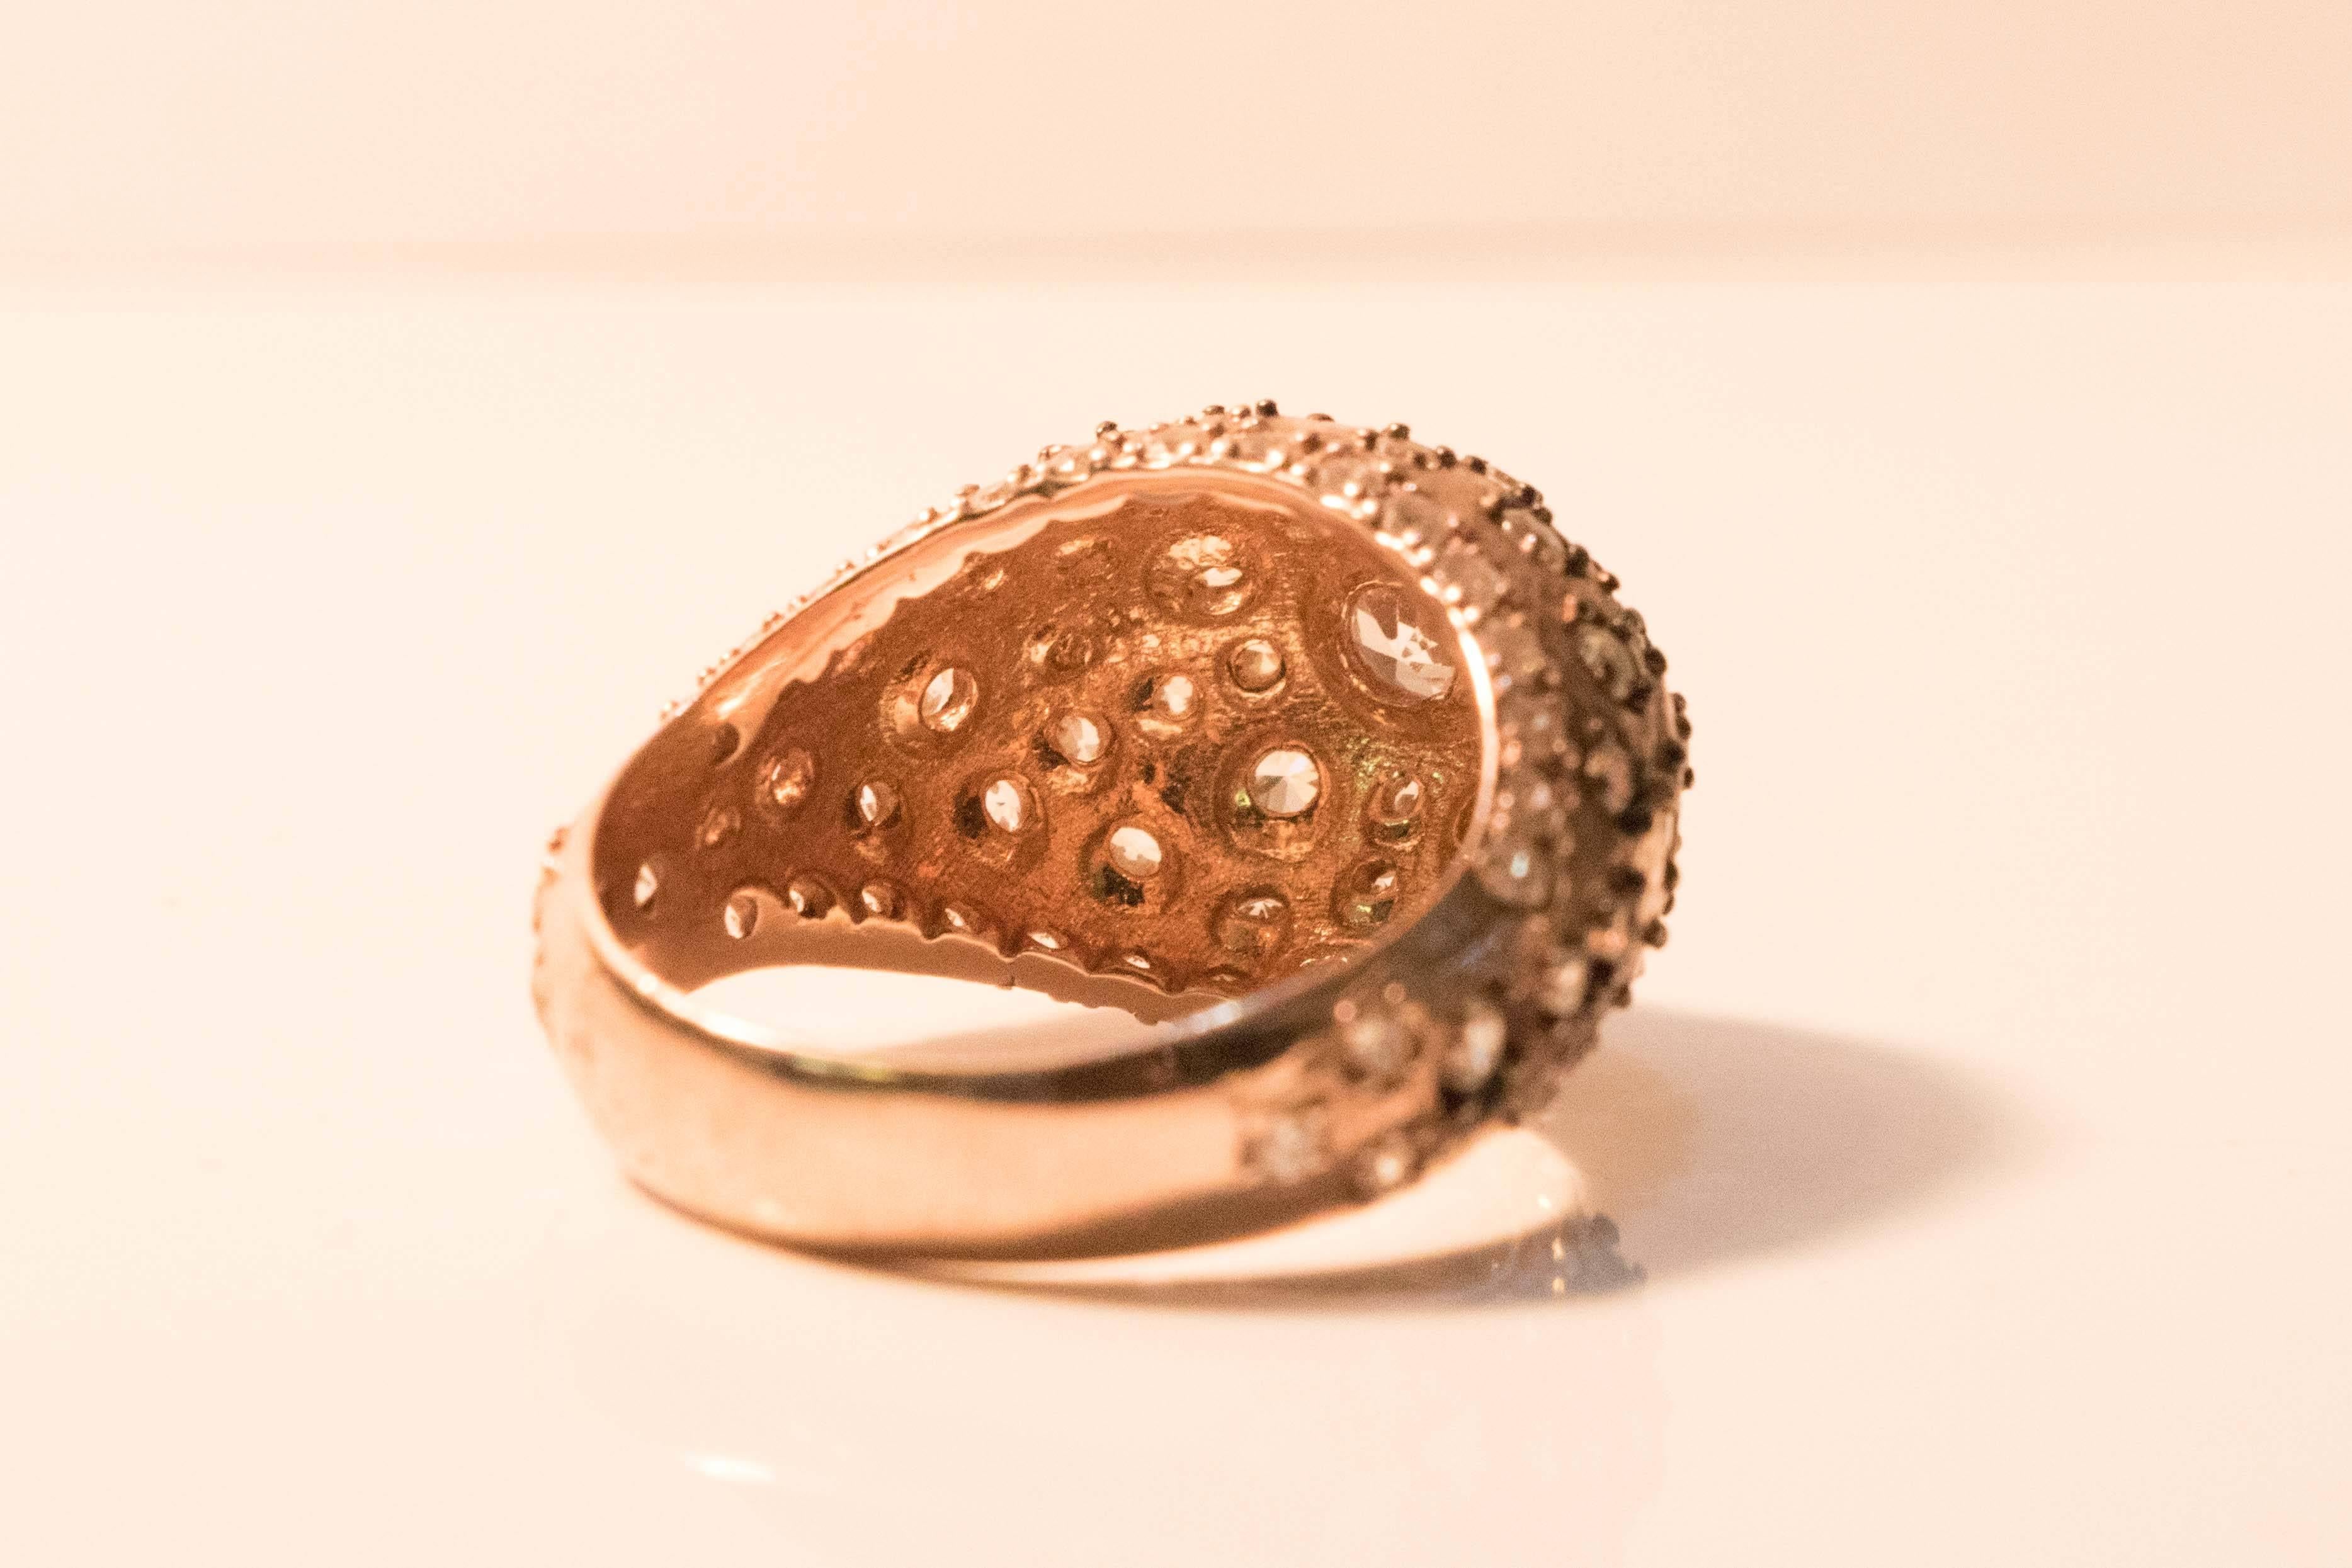 Austrian Vintage Edwardian Shaped 1920s Style Swavorski Ring For Sale